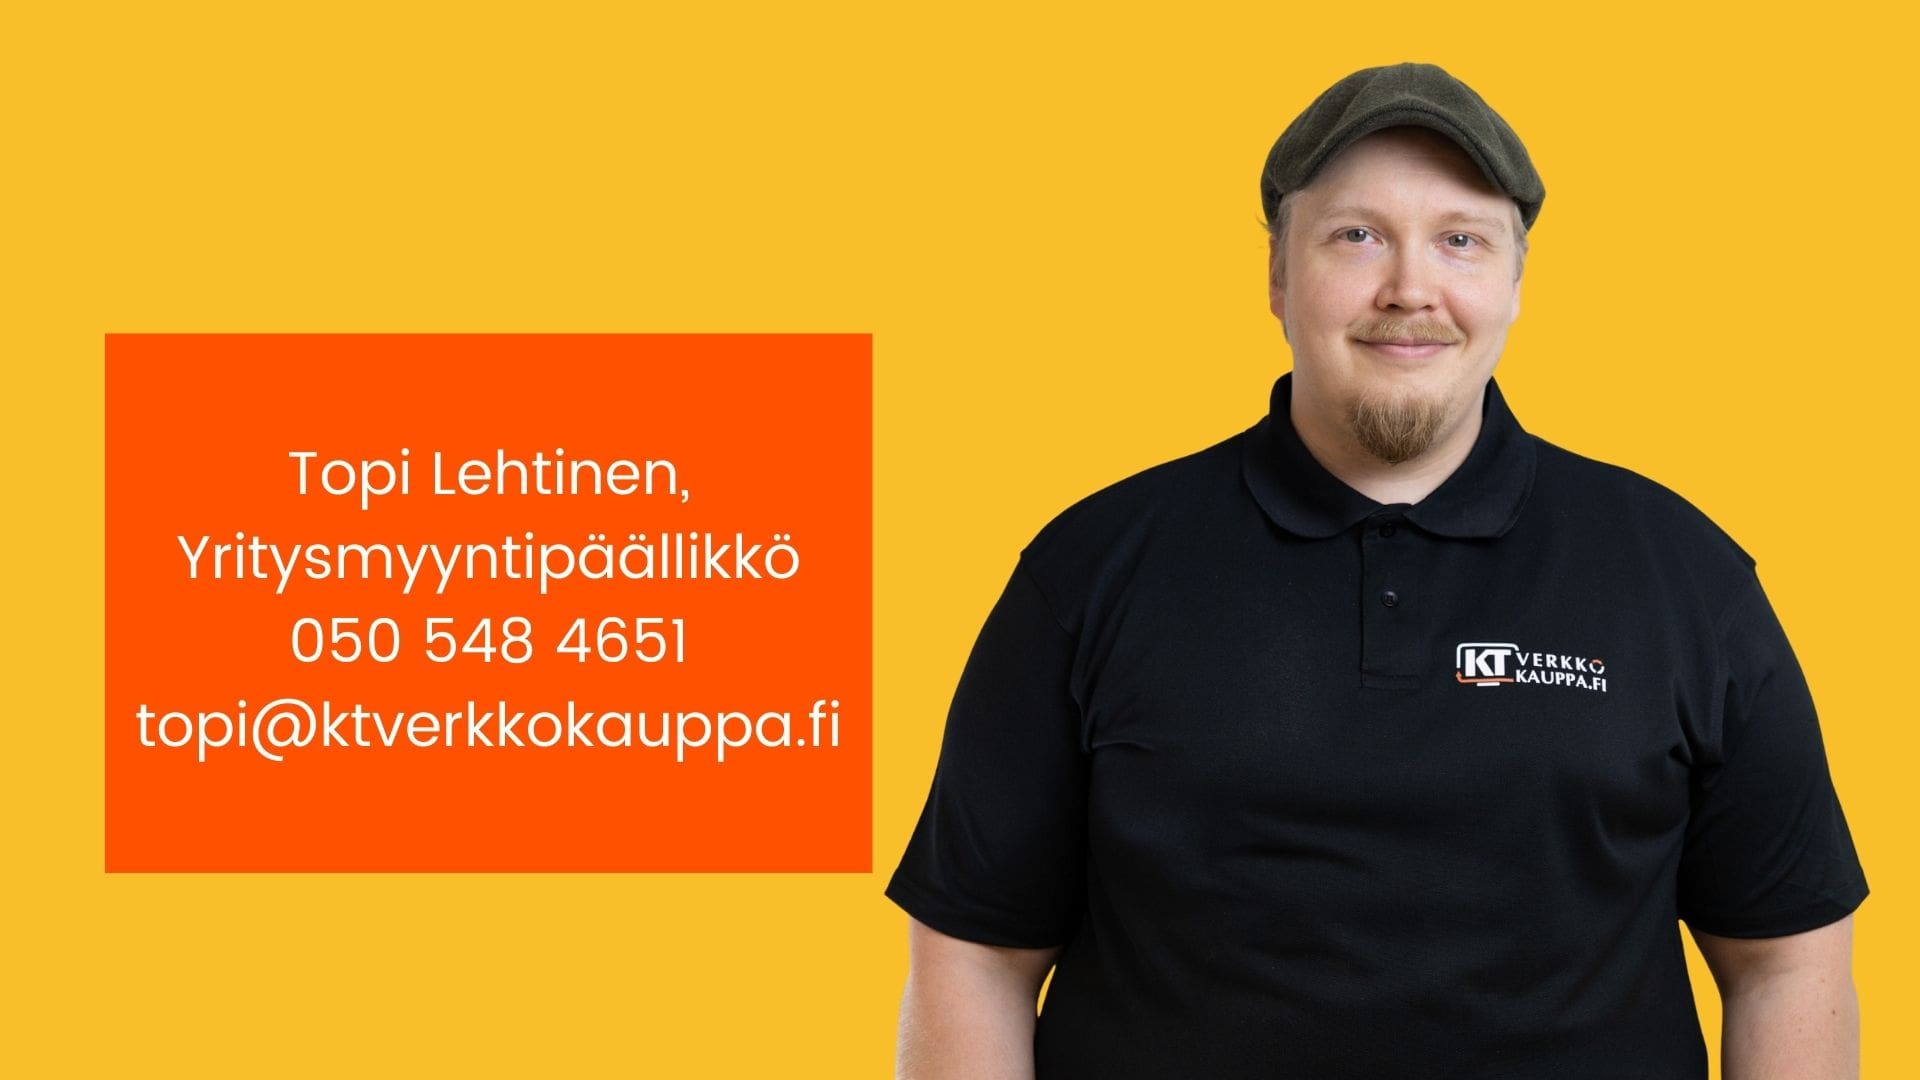 Topi Lehtinen, Yritysmyyntipäällikkö Ktverkkokauppa Keltainen 2